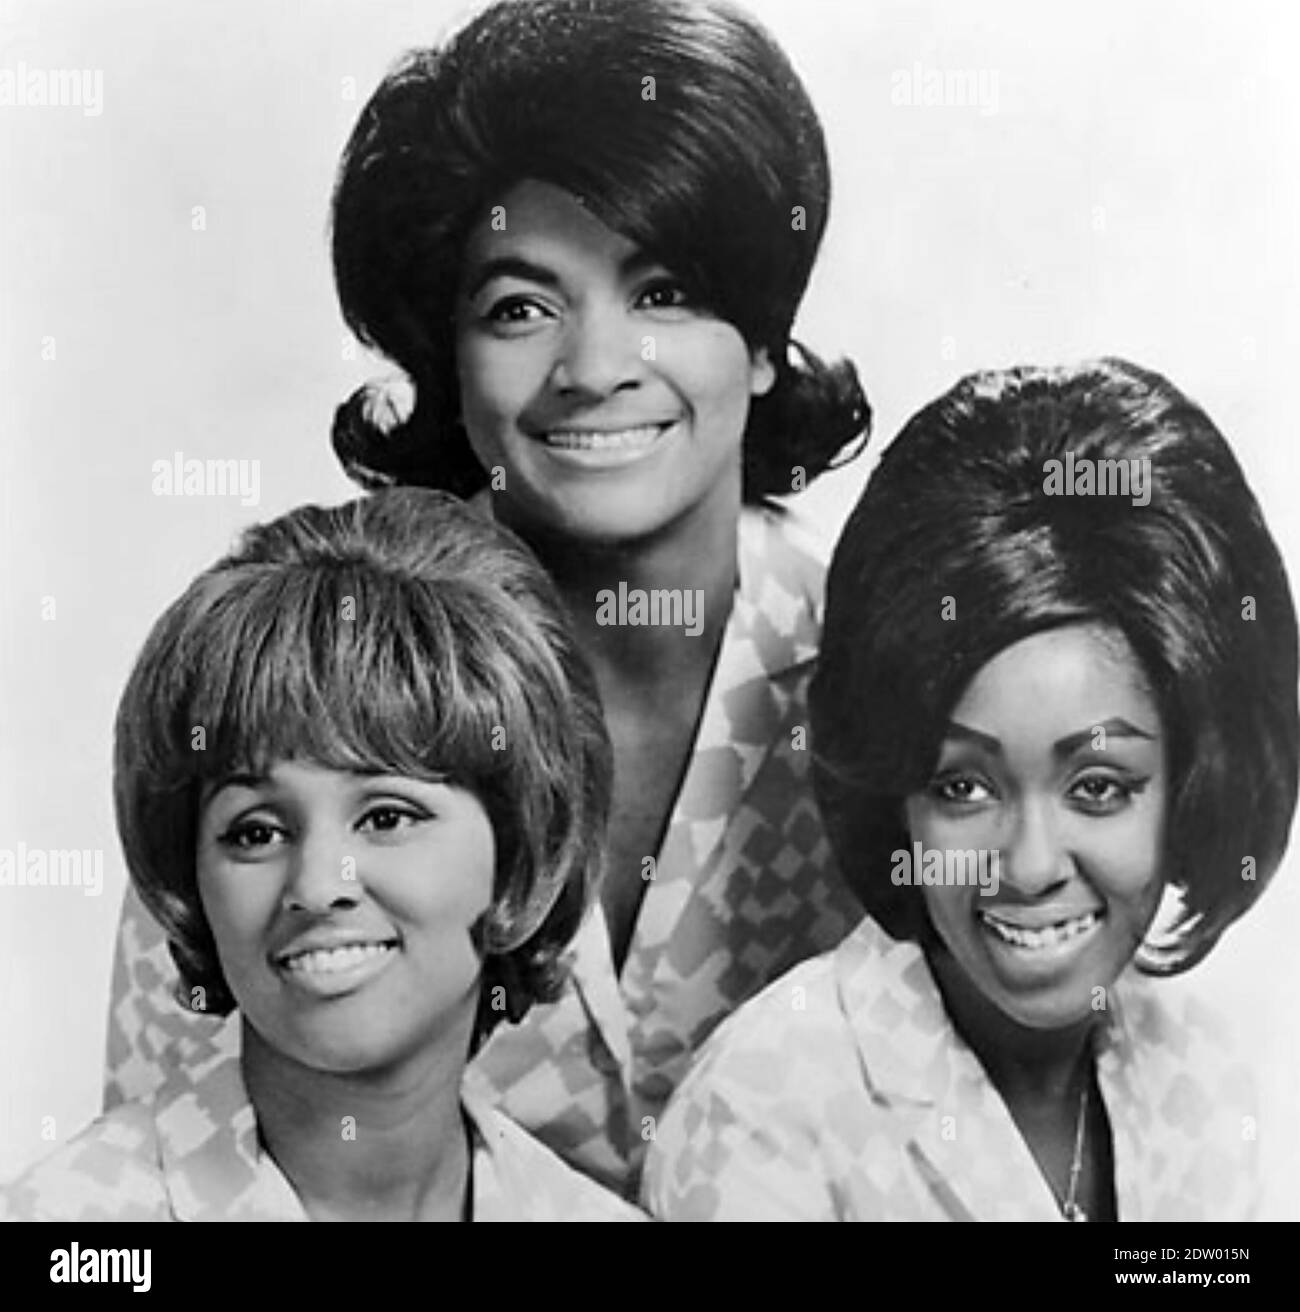 THE BLOSSOMS Foto promozionale del gruppo americano nel 1966. Da sinistra: Darlene Love, Fanita James, Jean King Foto Stock